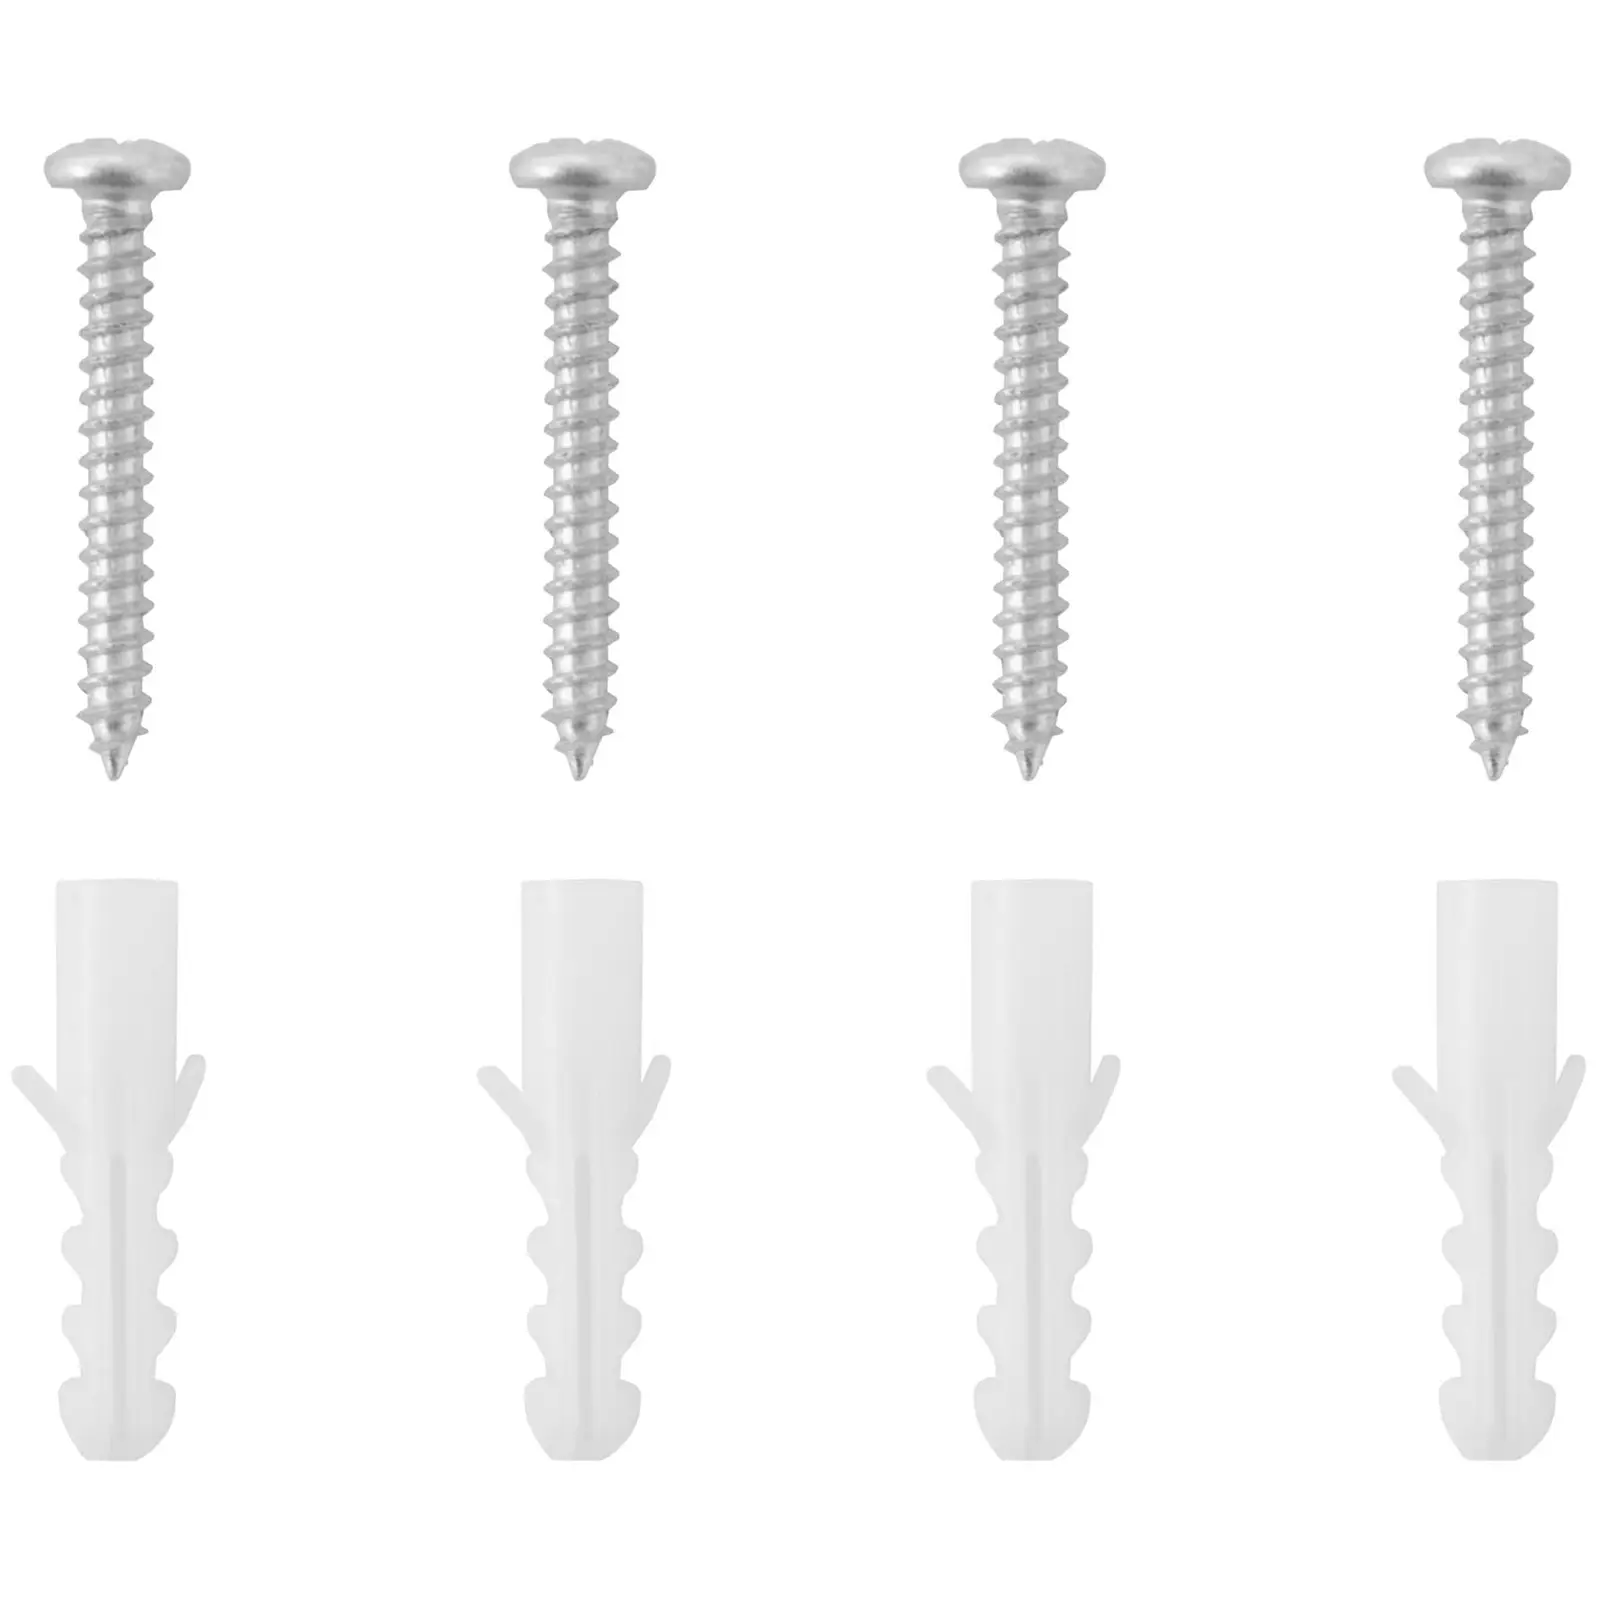 Nøkkelboks - kombinasjonskode - veggmontert - tallskjuler